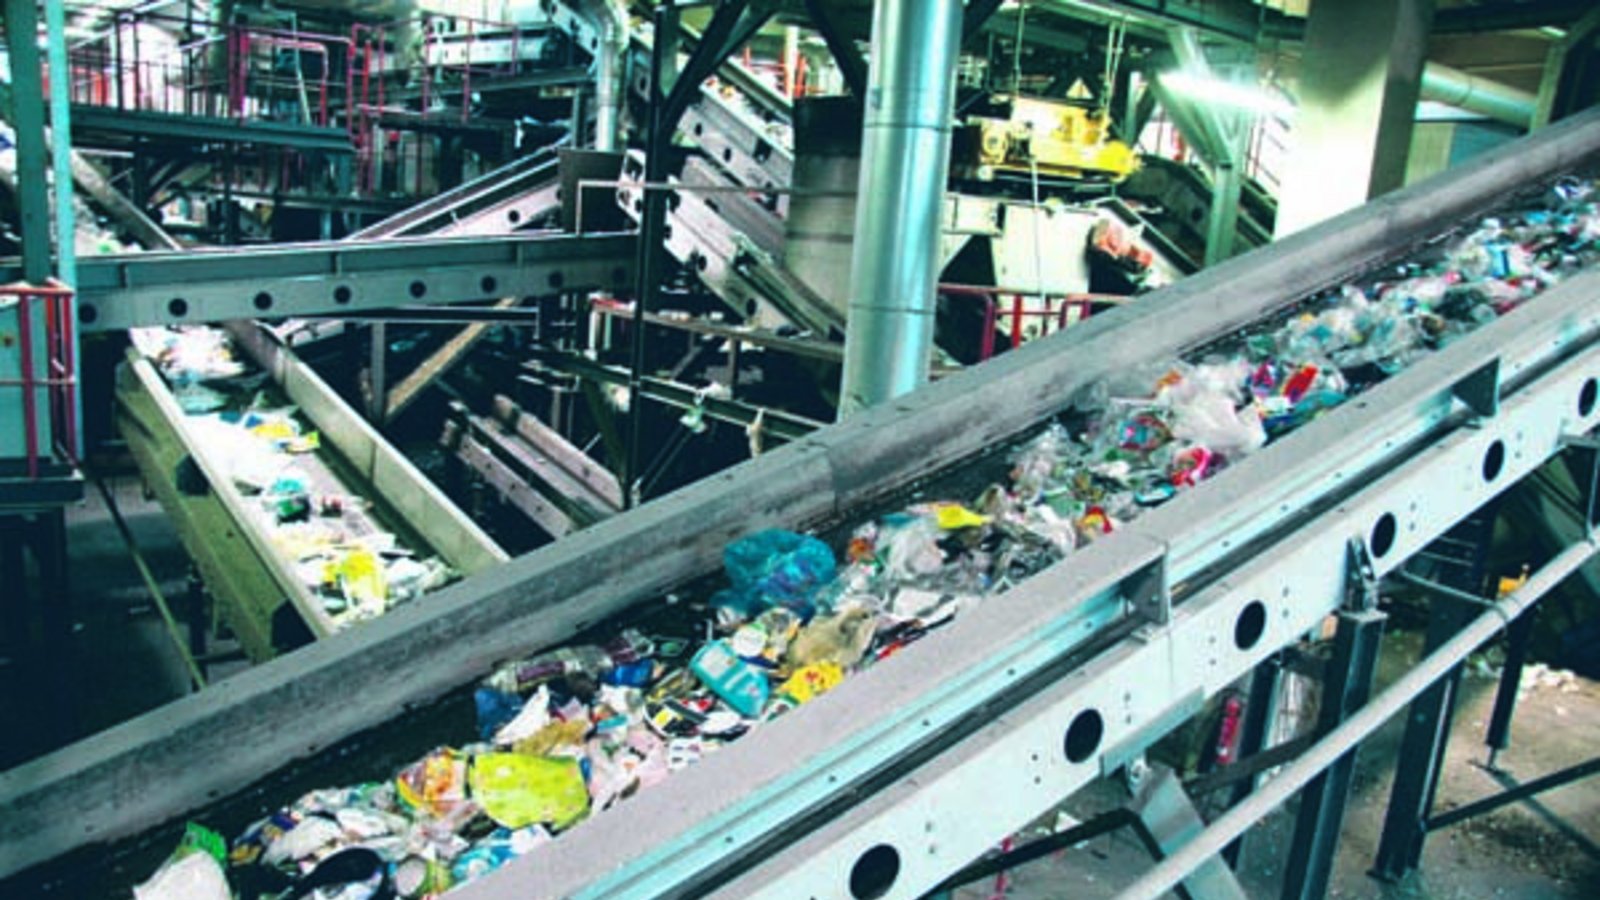 Alles Müll: Über diese Förderbänder läuft Hausabfall, der später sortiert und weiterverarbeitet wird. Foto: Schmid